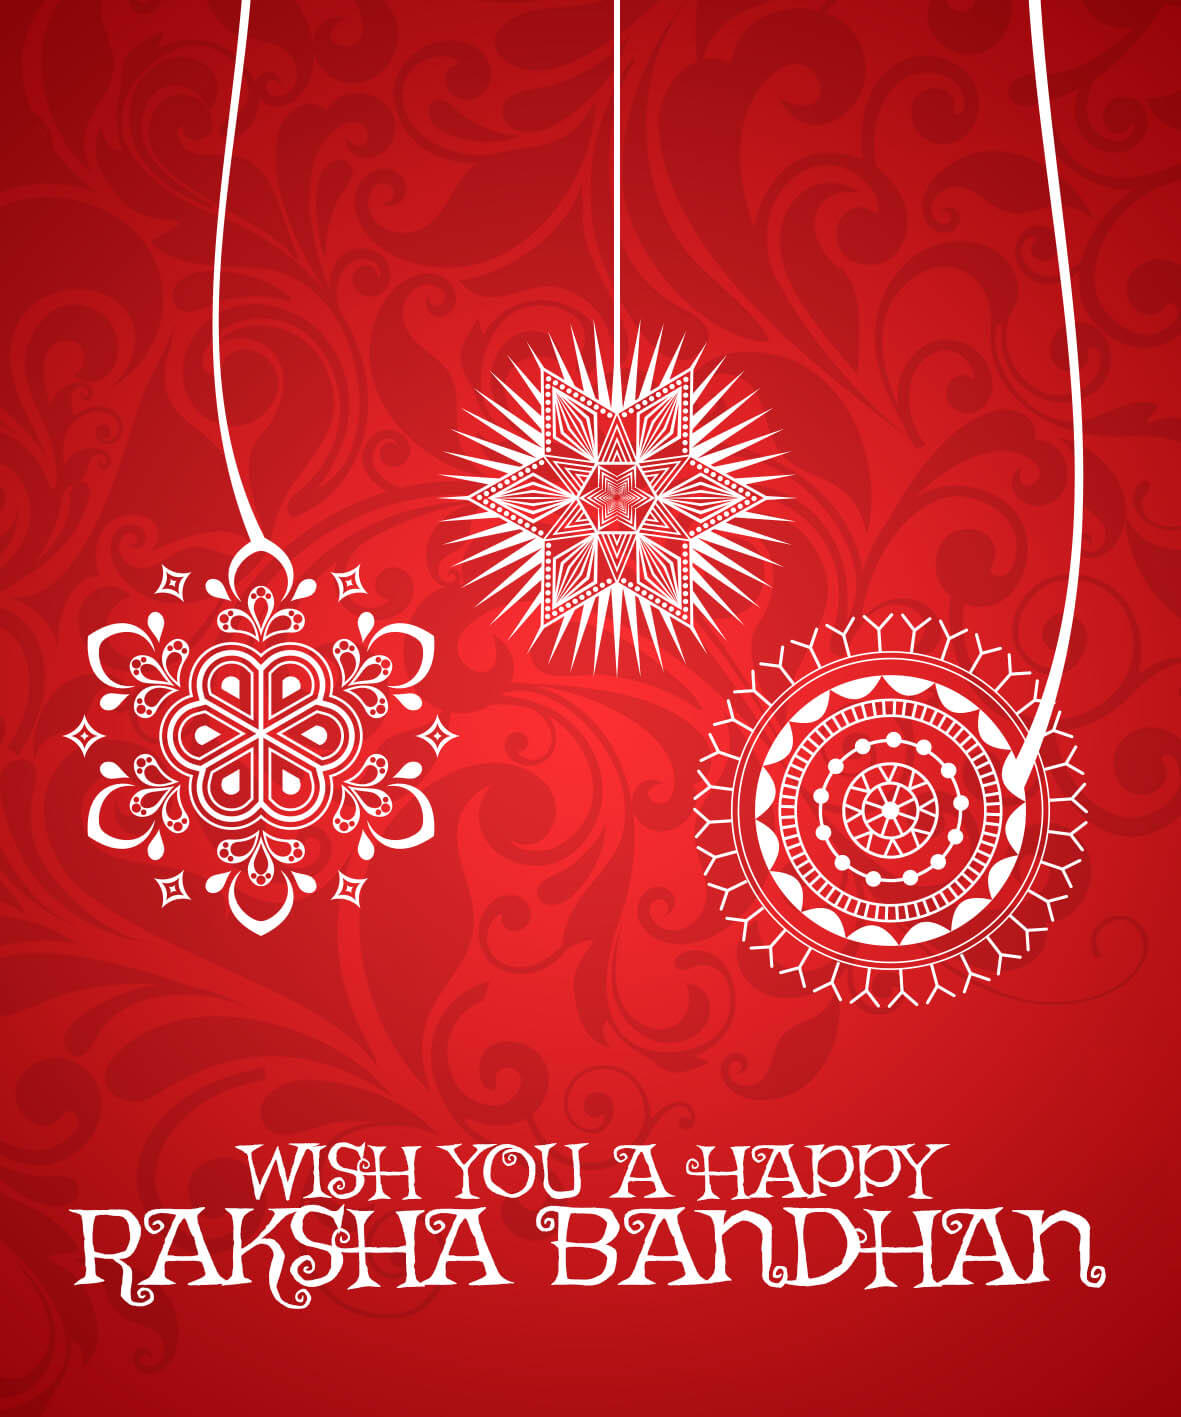 Raksha Bandhan | eGreetings Portal